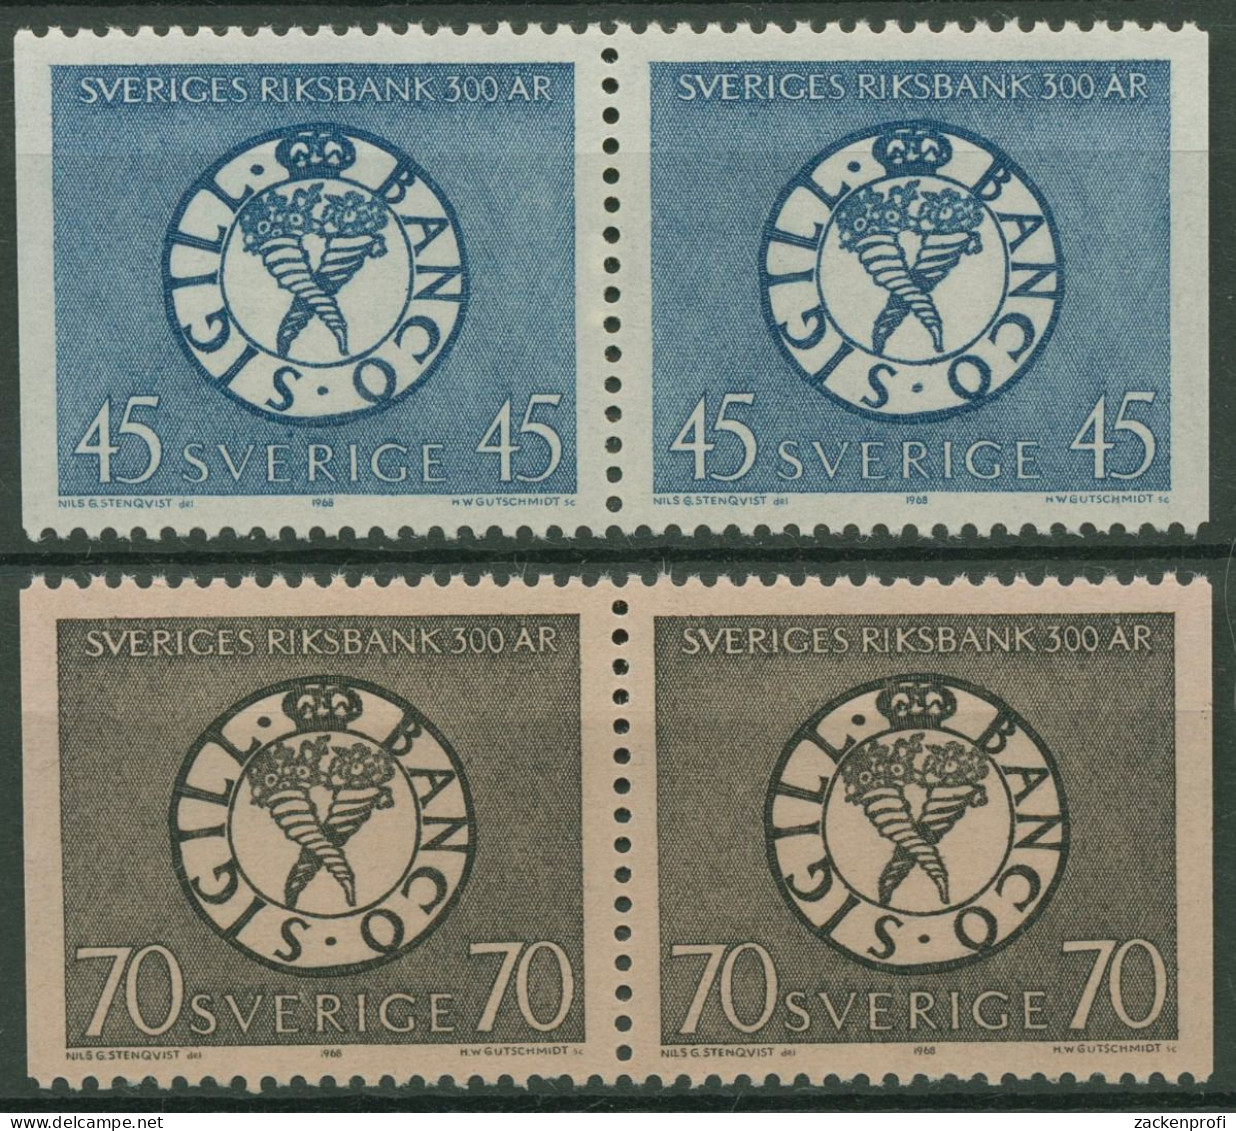 Schweden 1968 Schwedische Reichsbank Siegel 603/04 Dl/Dr Paare Postfrisch - Nuevos